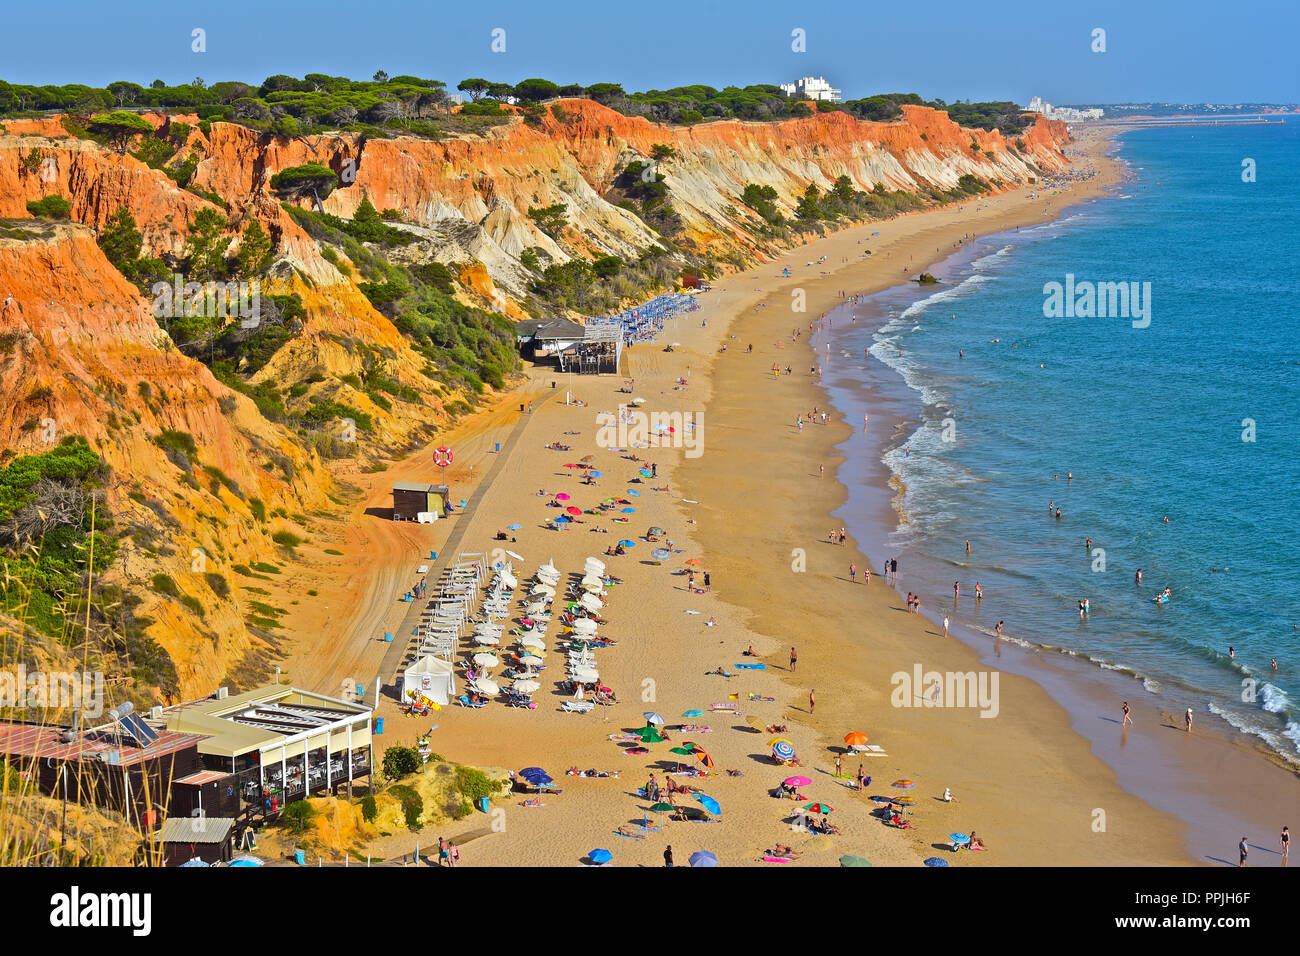 La splendida spiaggia di sabbia dorata di Praia de Falésia si estende oltre sei chilometri da Vilamoura a Olhos d'Agua, nella regione di Algarve in Portogallo. Foto Stock